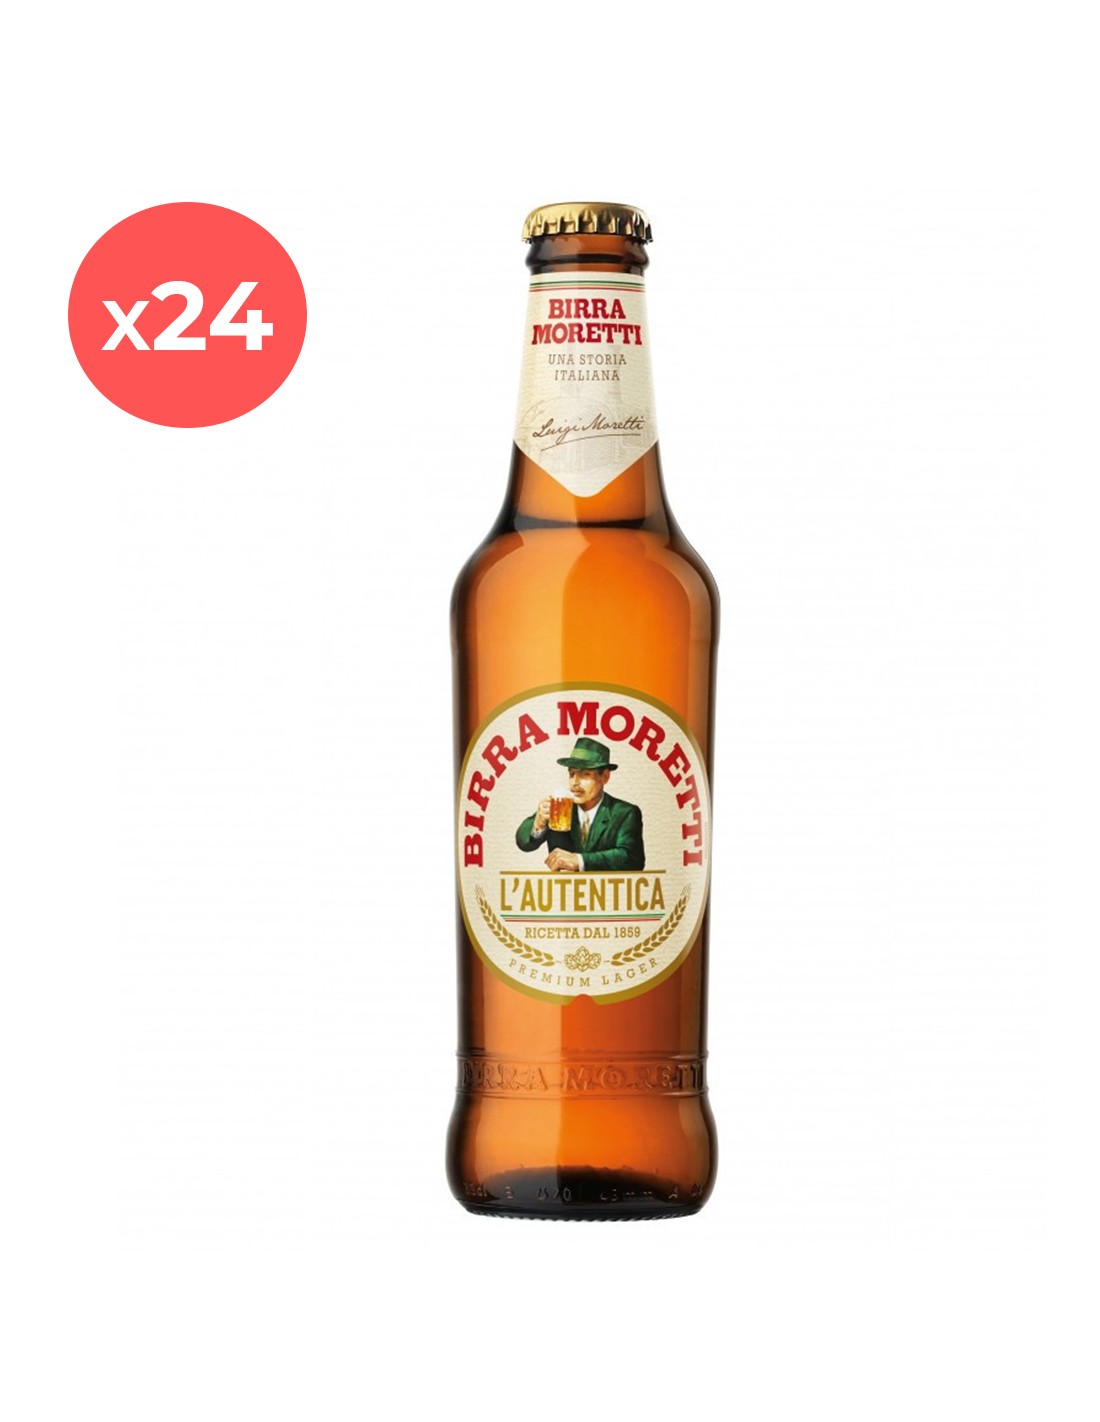 Bax 24 bucati bere blonda Birra Moretti, 4.6% alc., 0.33L, sticla alcooldiscount.ro